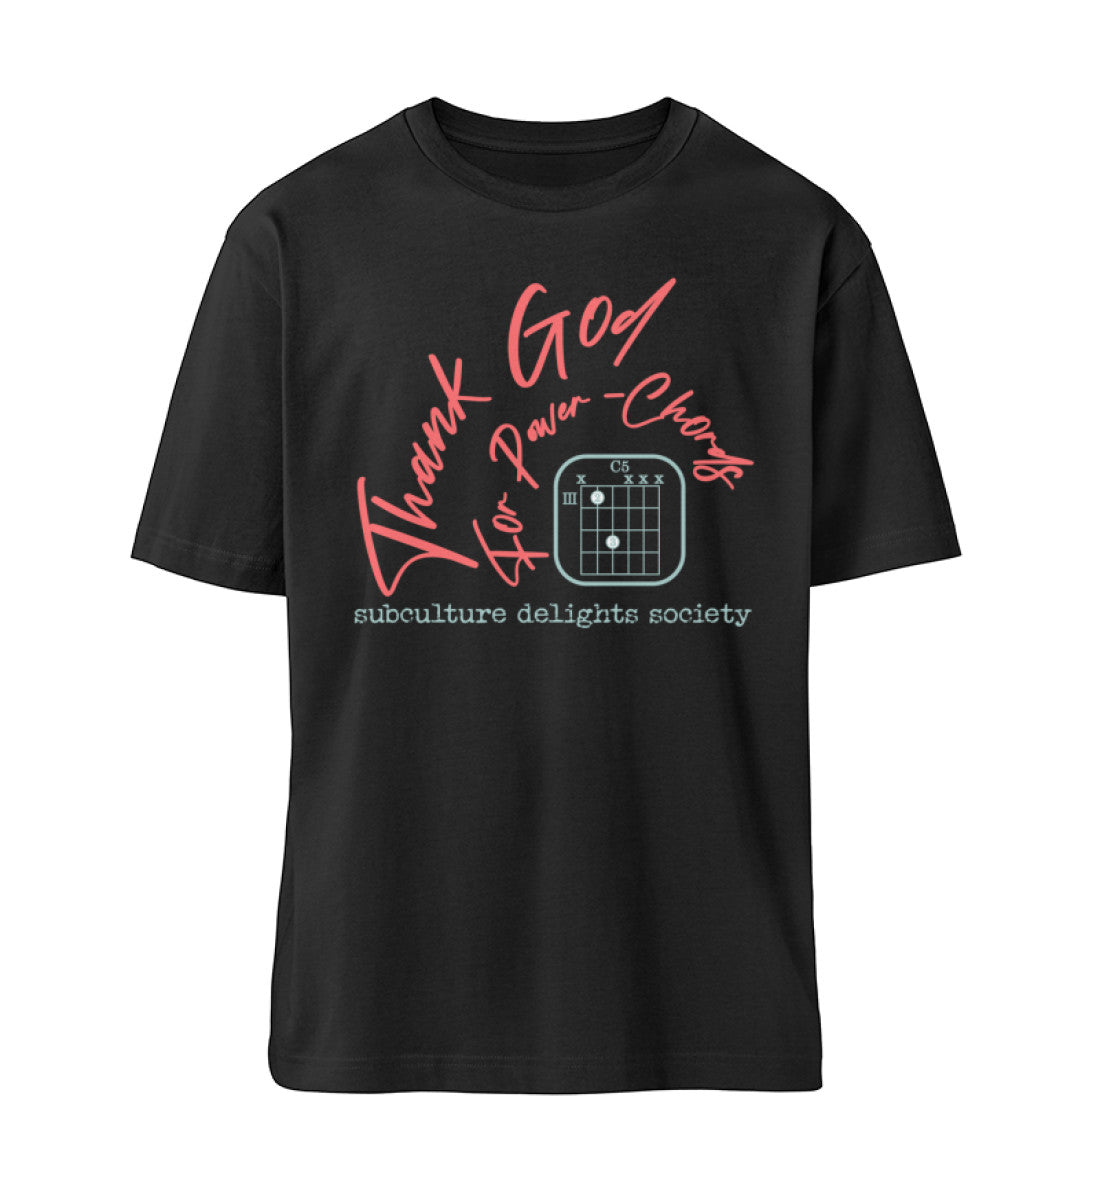 Schwarzes T-Shirt Unisex Relaxed Fit für Frauen und Männer bedruckt mit dem Design der Roger Rockawoo Clothing Kollektion Guitar thank god for power chords